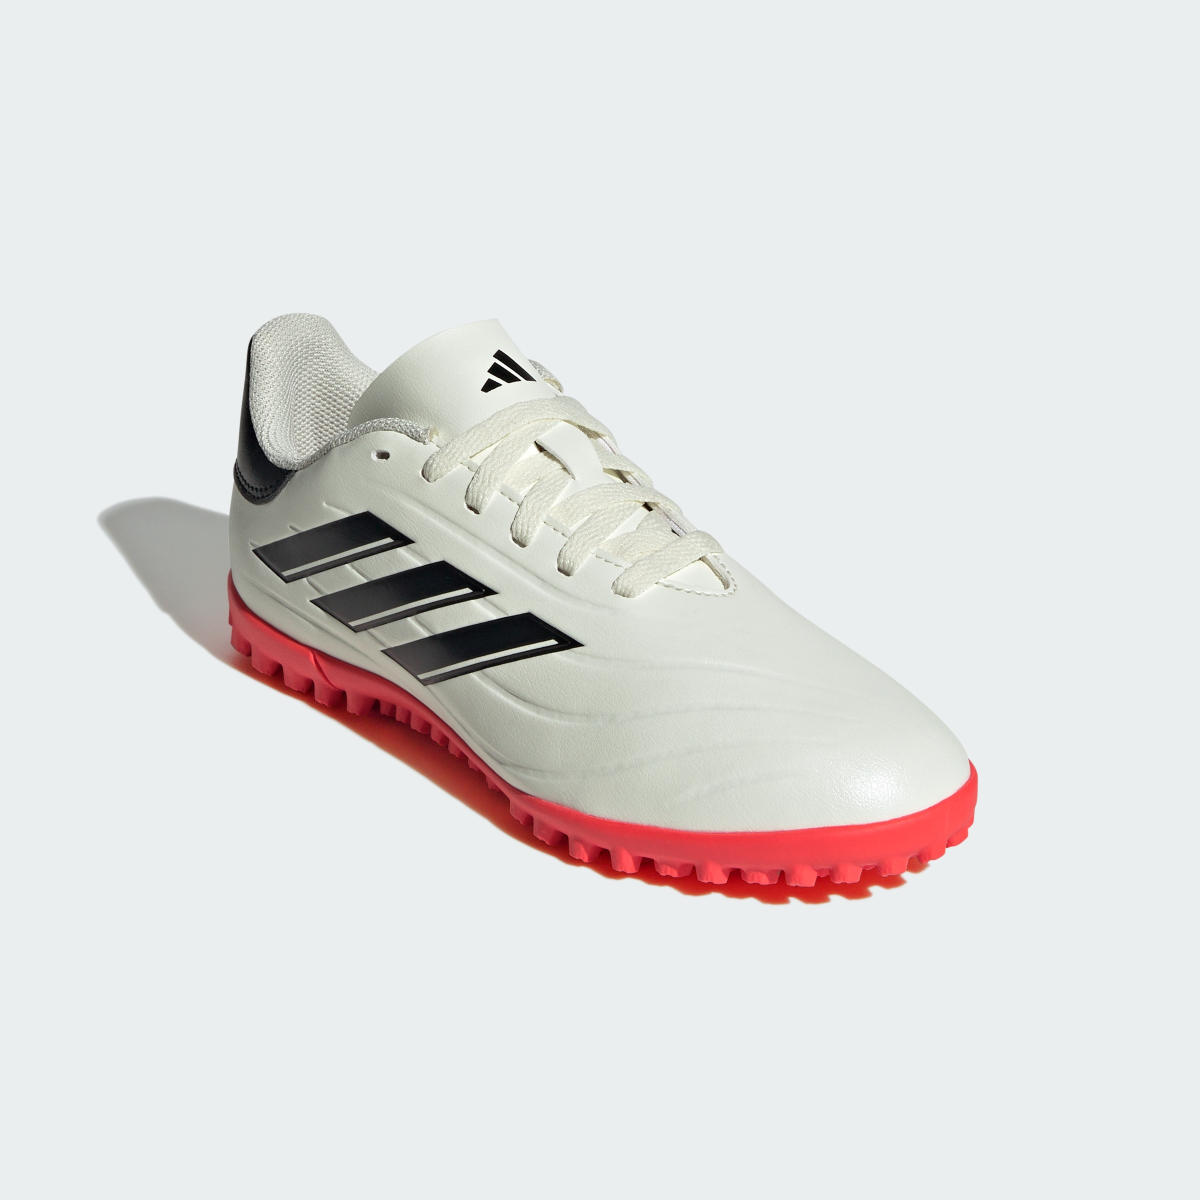 Adidas Copa Pure II Club Turf Boots. 5